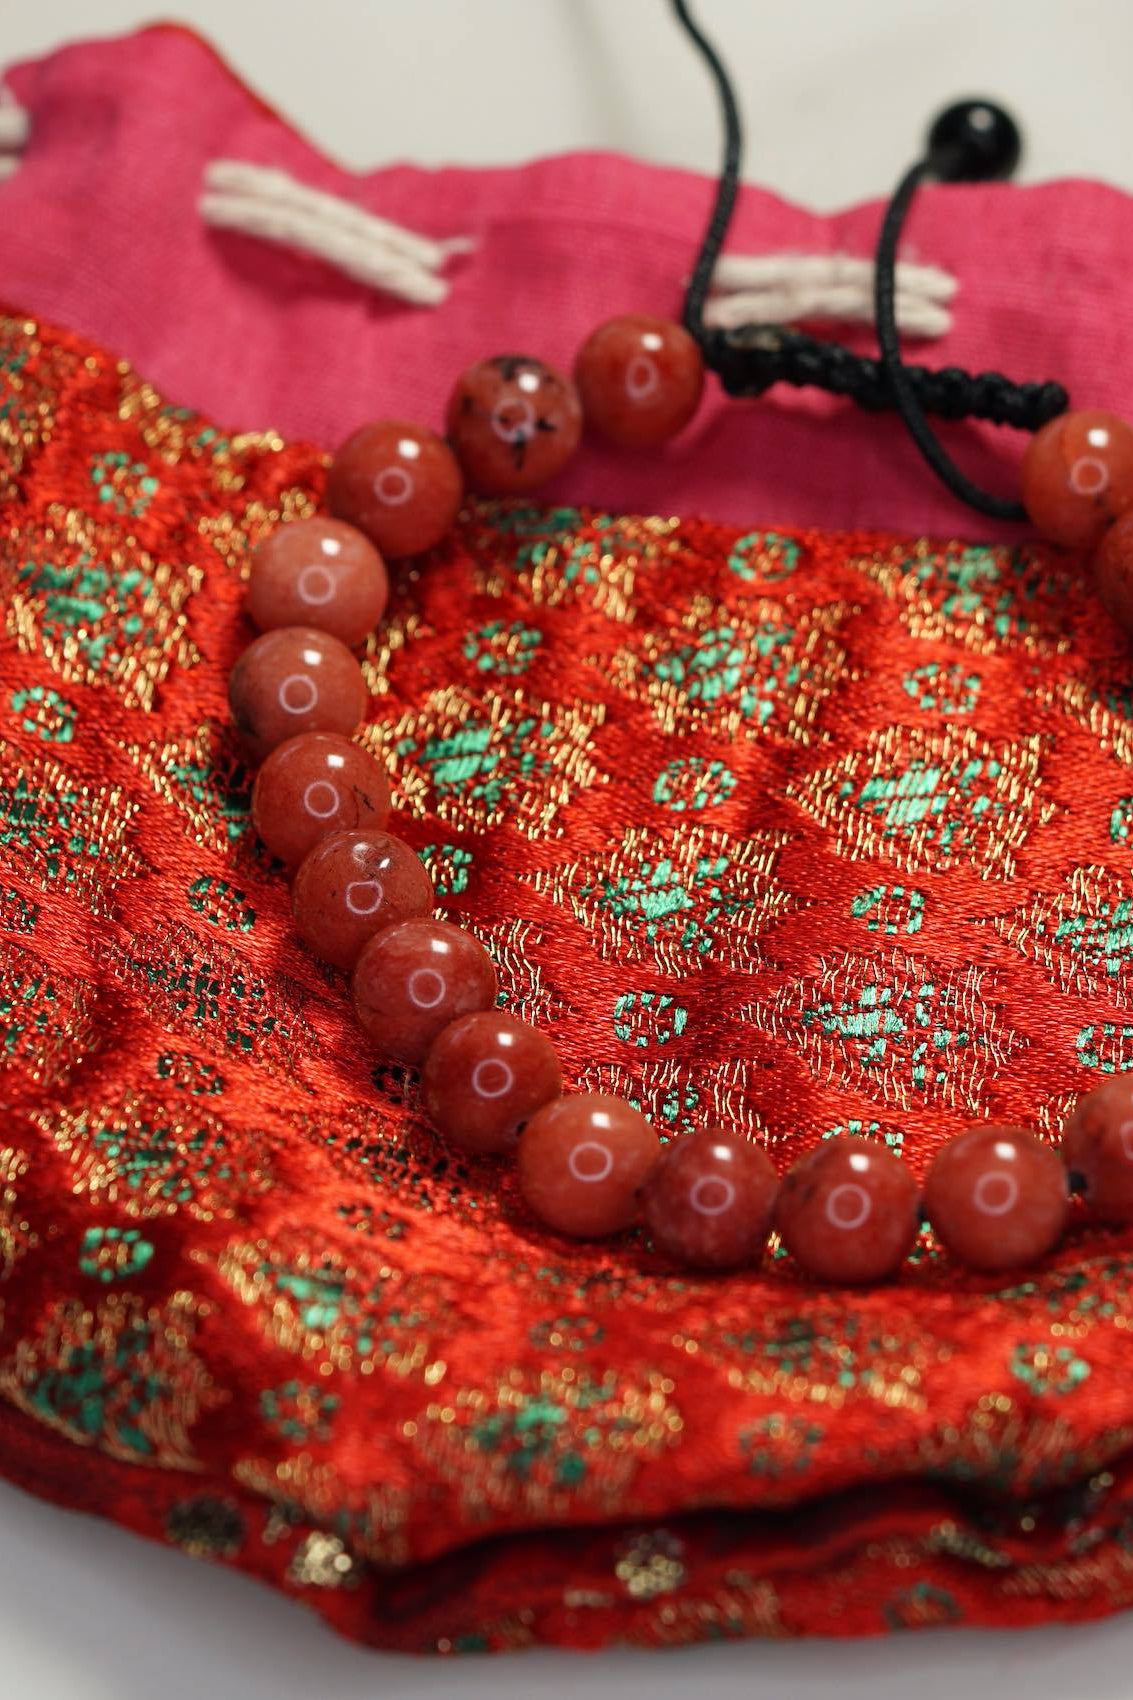 Red Jasper Handmade Bracelet - Lucky Thanka